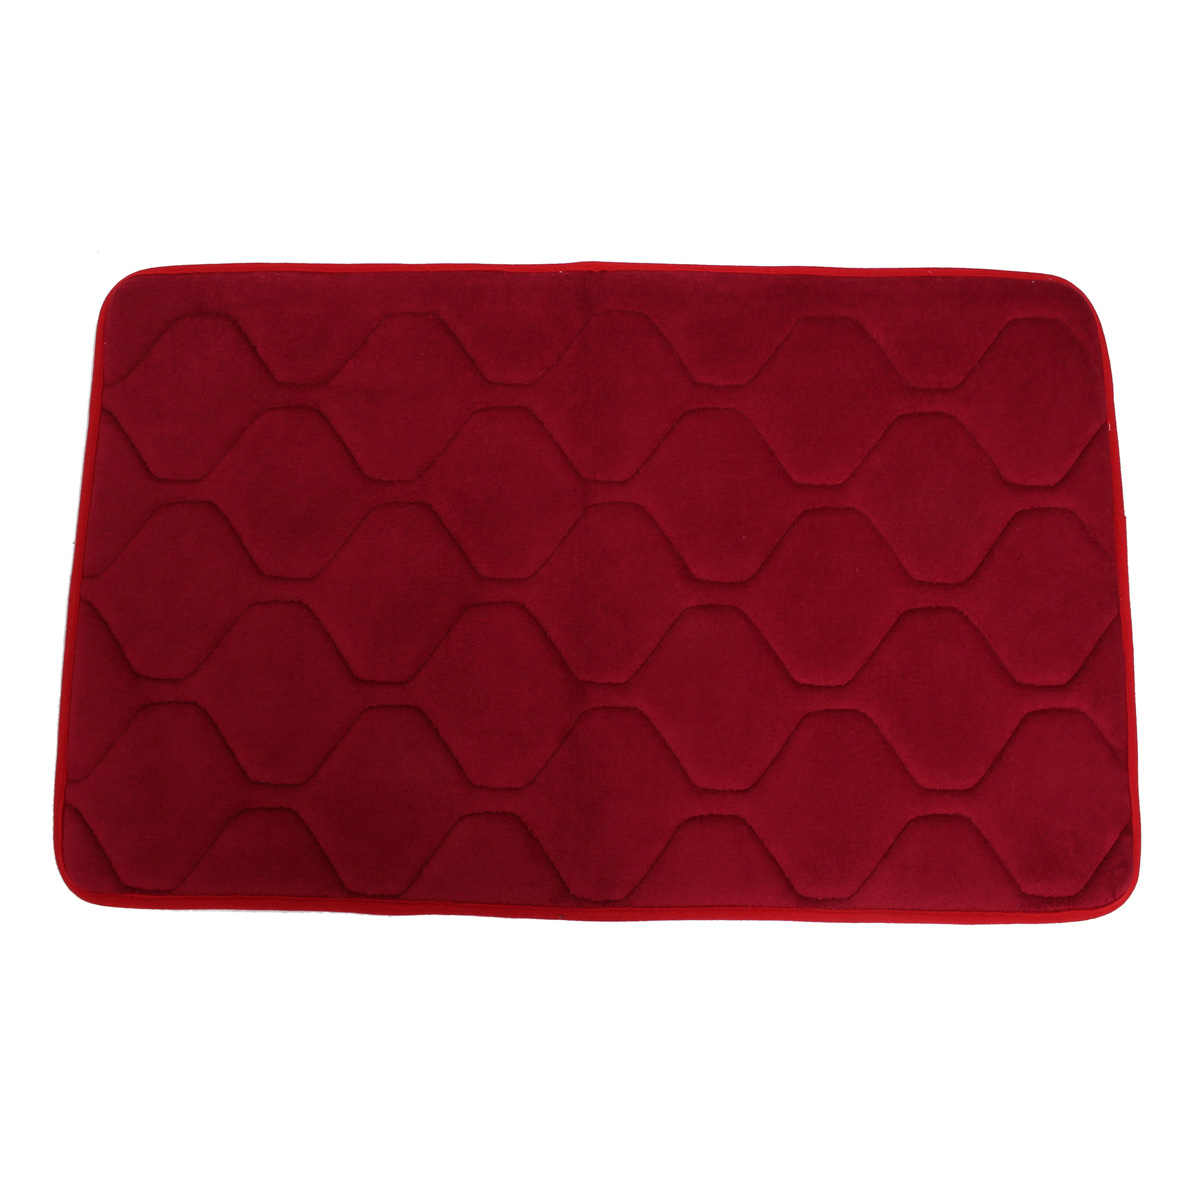 80x50cm Absorbent Anti Slip Memory Carpet Bath Rug Coral Velvet Chronic Rebound Floor Mat